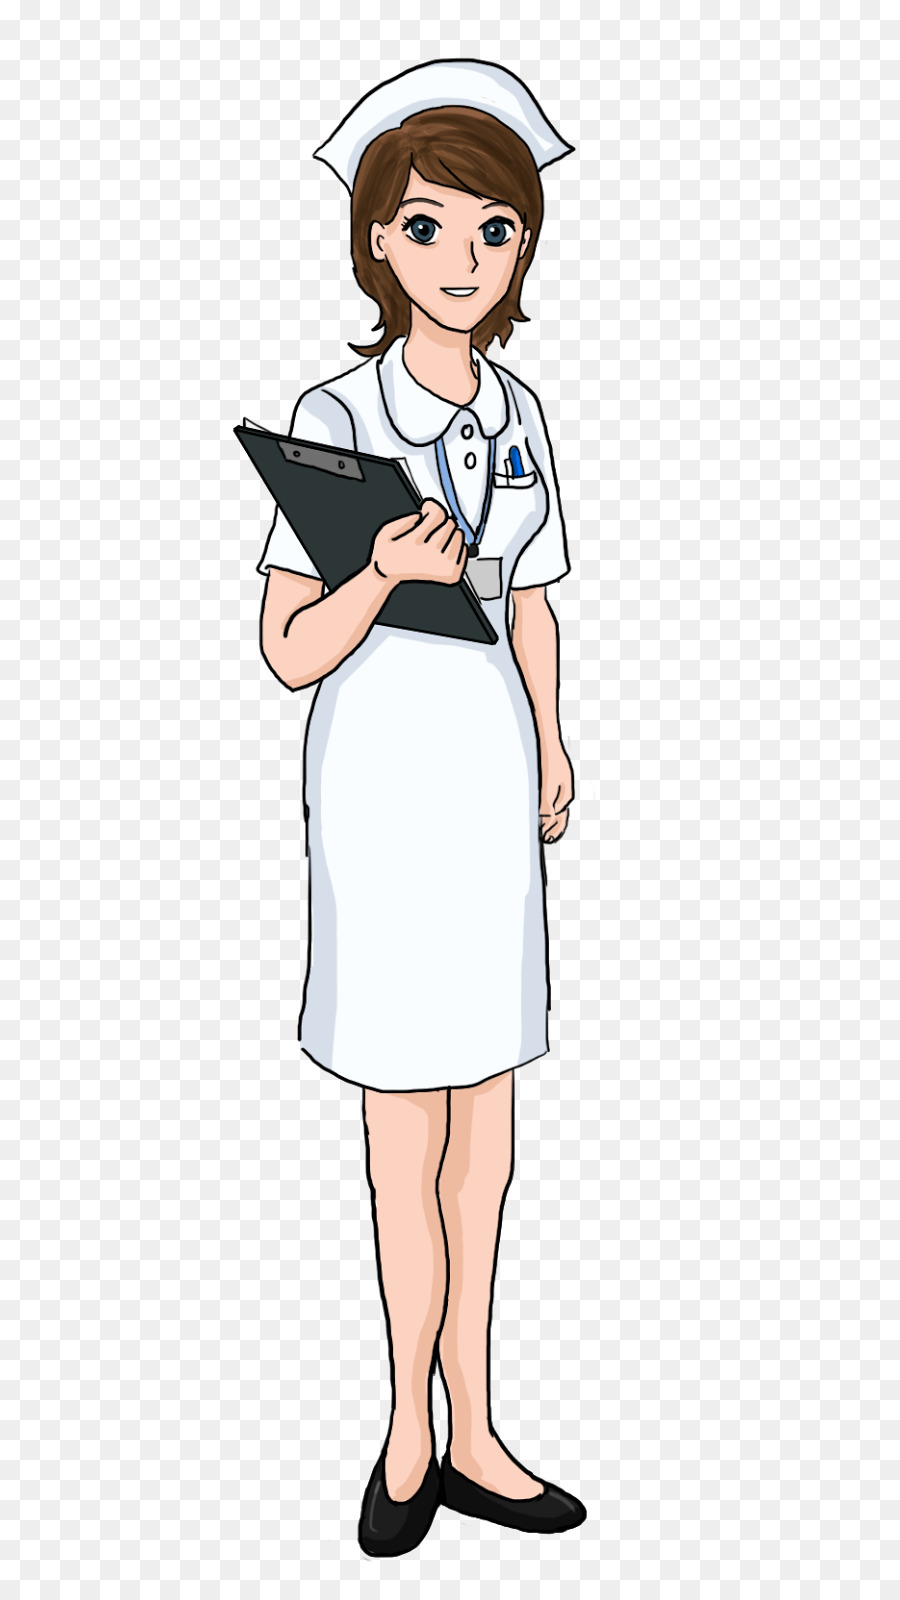 Nursing Registered nurse Clip art - fisherman png download - 659*1600 - Free Transparent  png Download.